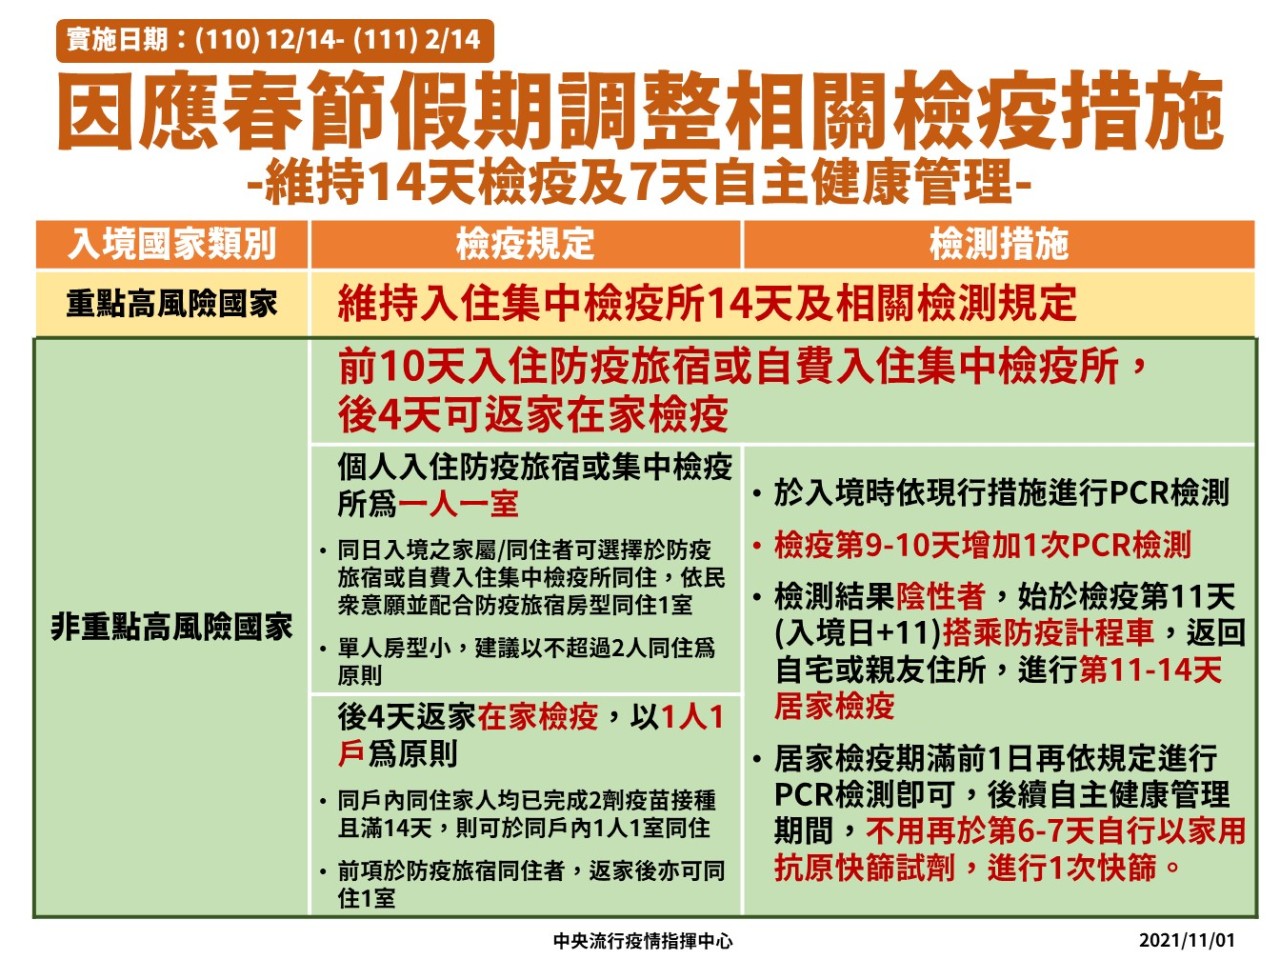 Từ ngày 14/12/2021-14/2/2022, người trở về Đài Loan từ các nước nguy cơ lây nhiễm COVID-19 thấp sẽ được nới lỏng quy định cách ly. (Nguồn ảnh: Trung tâm Chỉ huy và phòng chống dịch bệnh Trung ương Đài Loan)